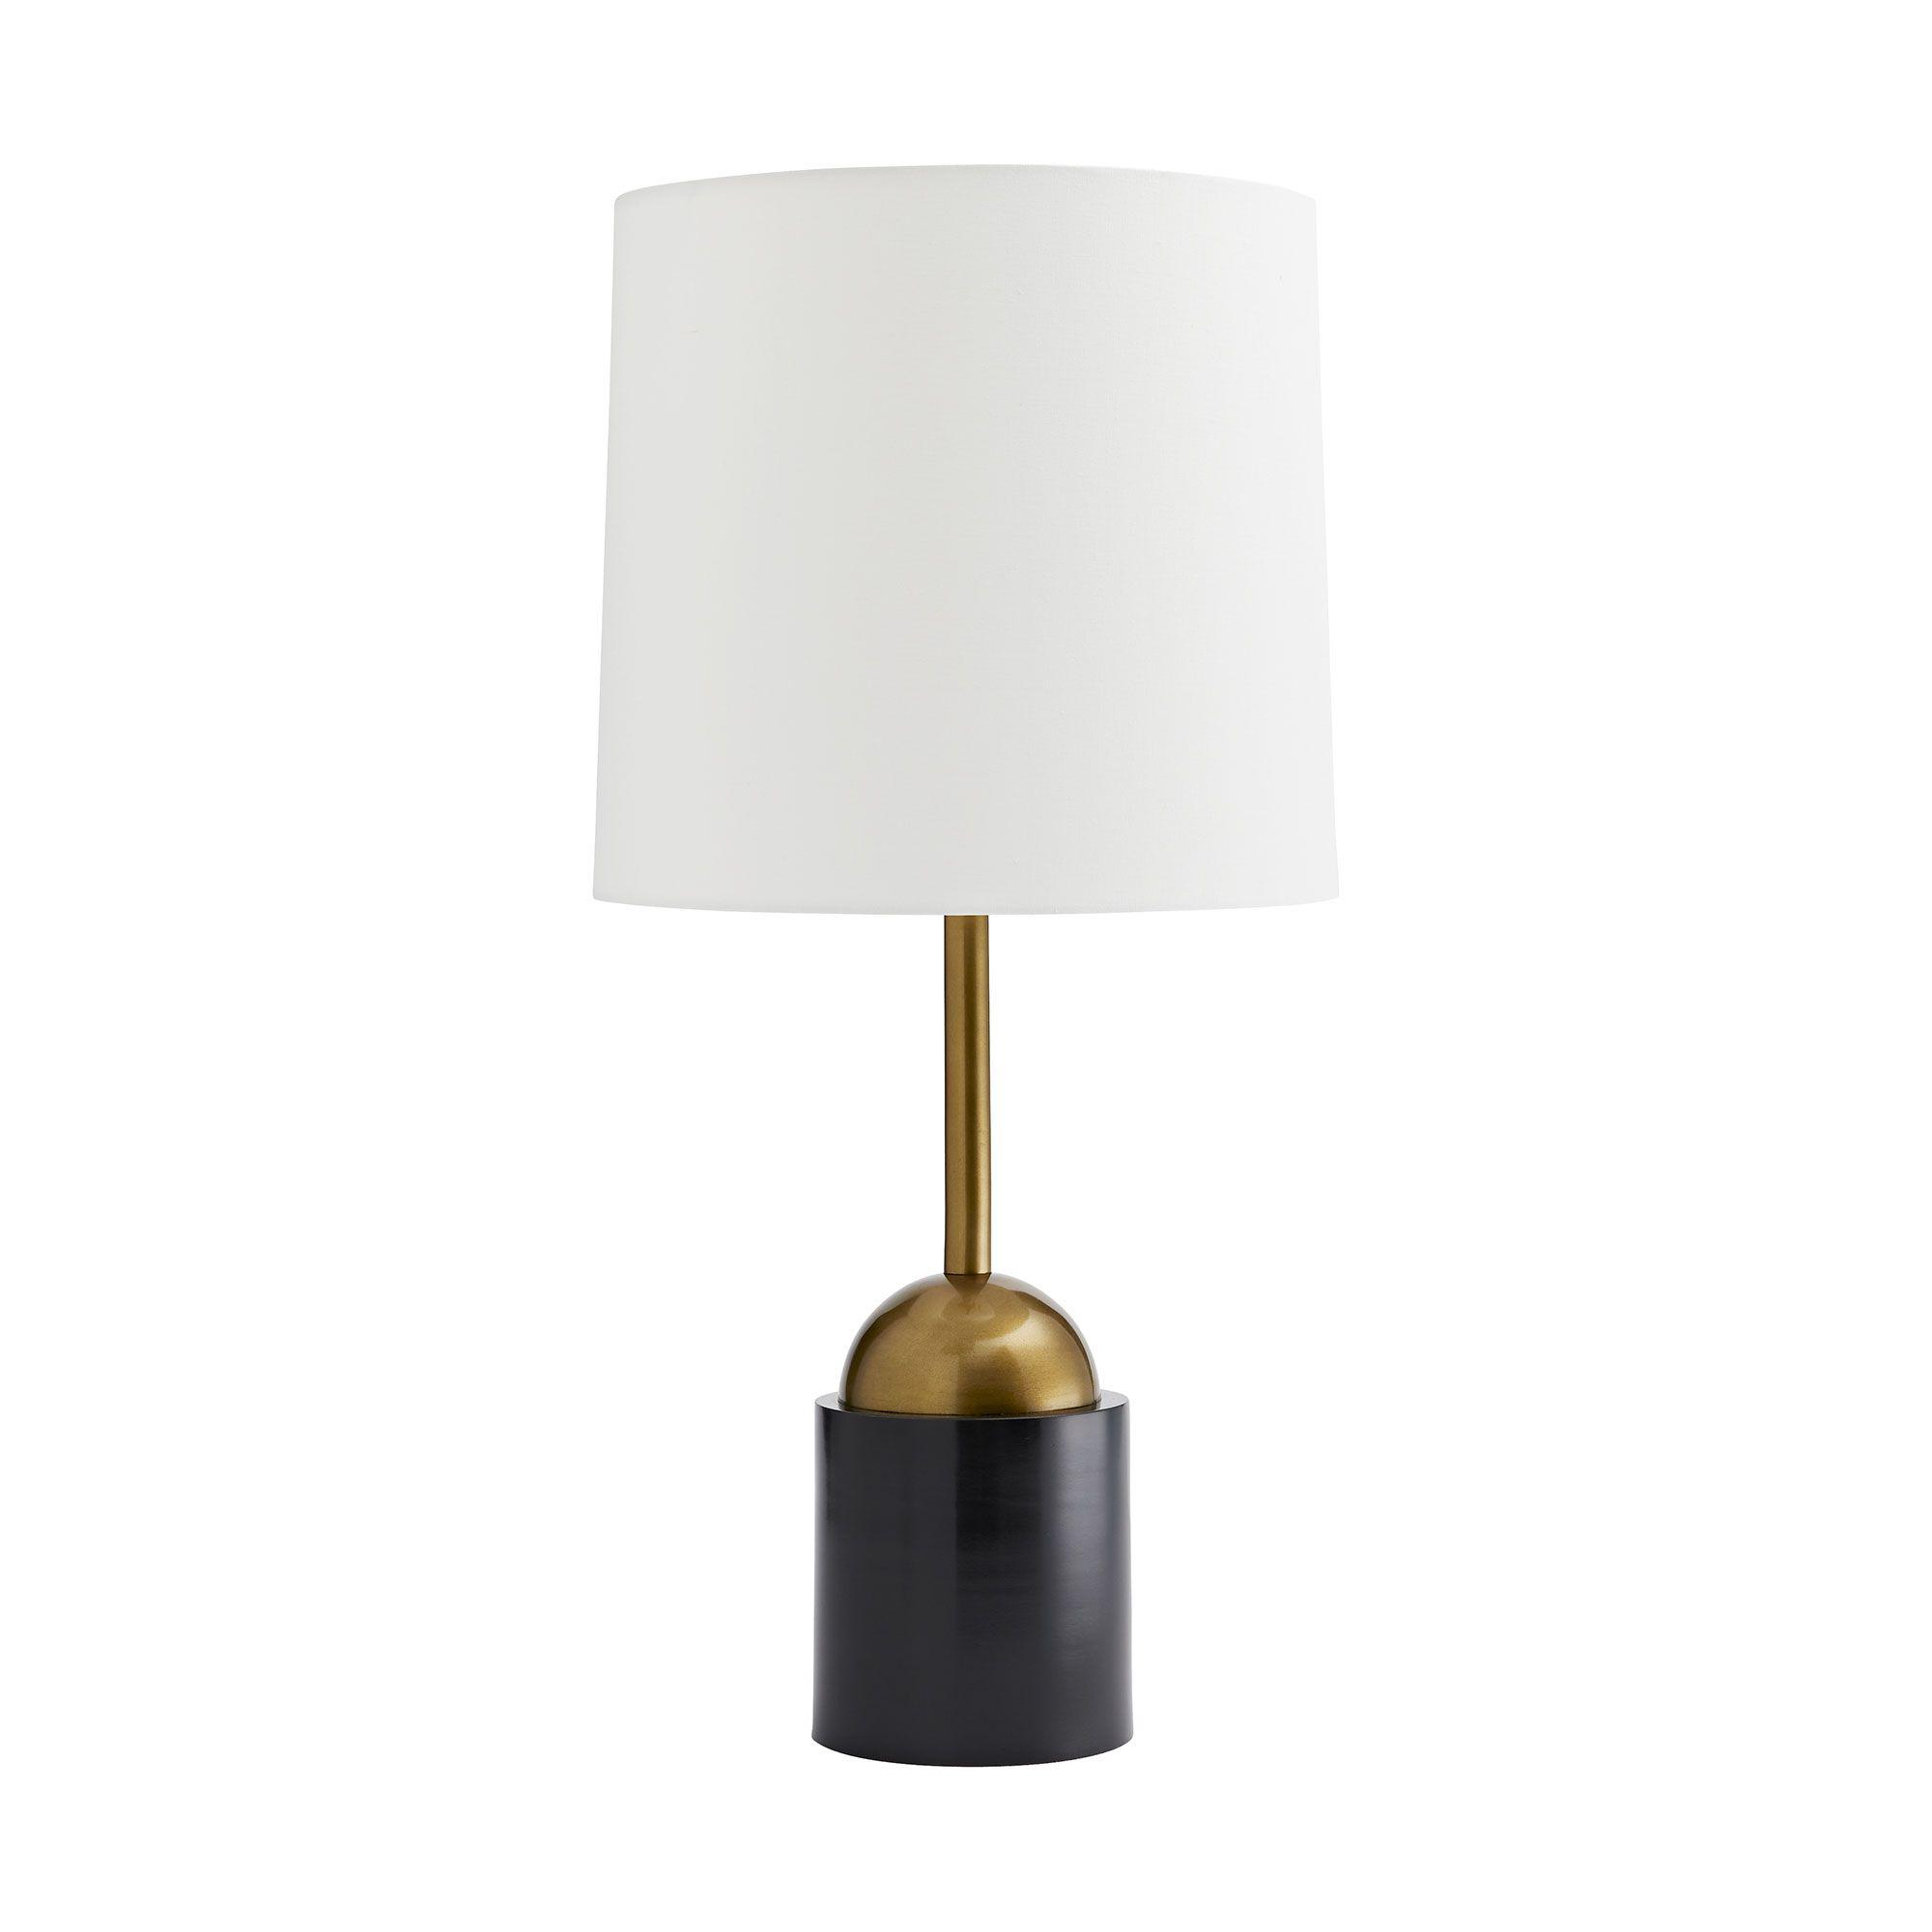 Купить Настольная лампа Grove Lamp в интернет-магазине roooms.ru